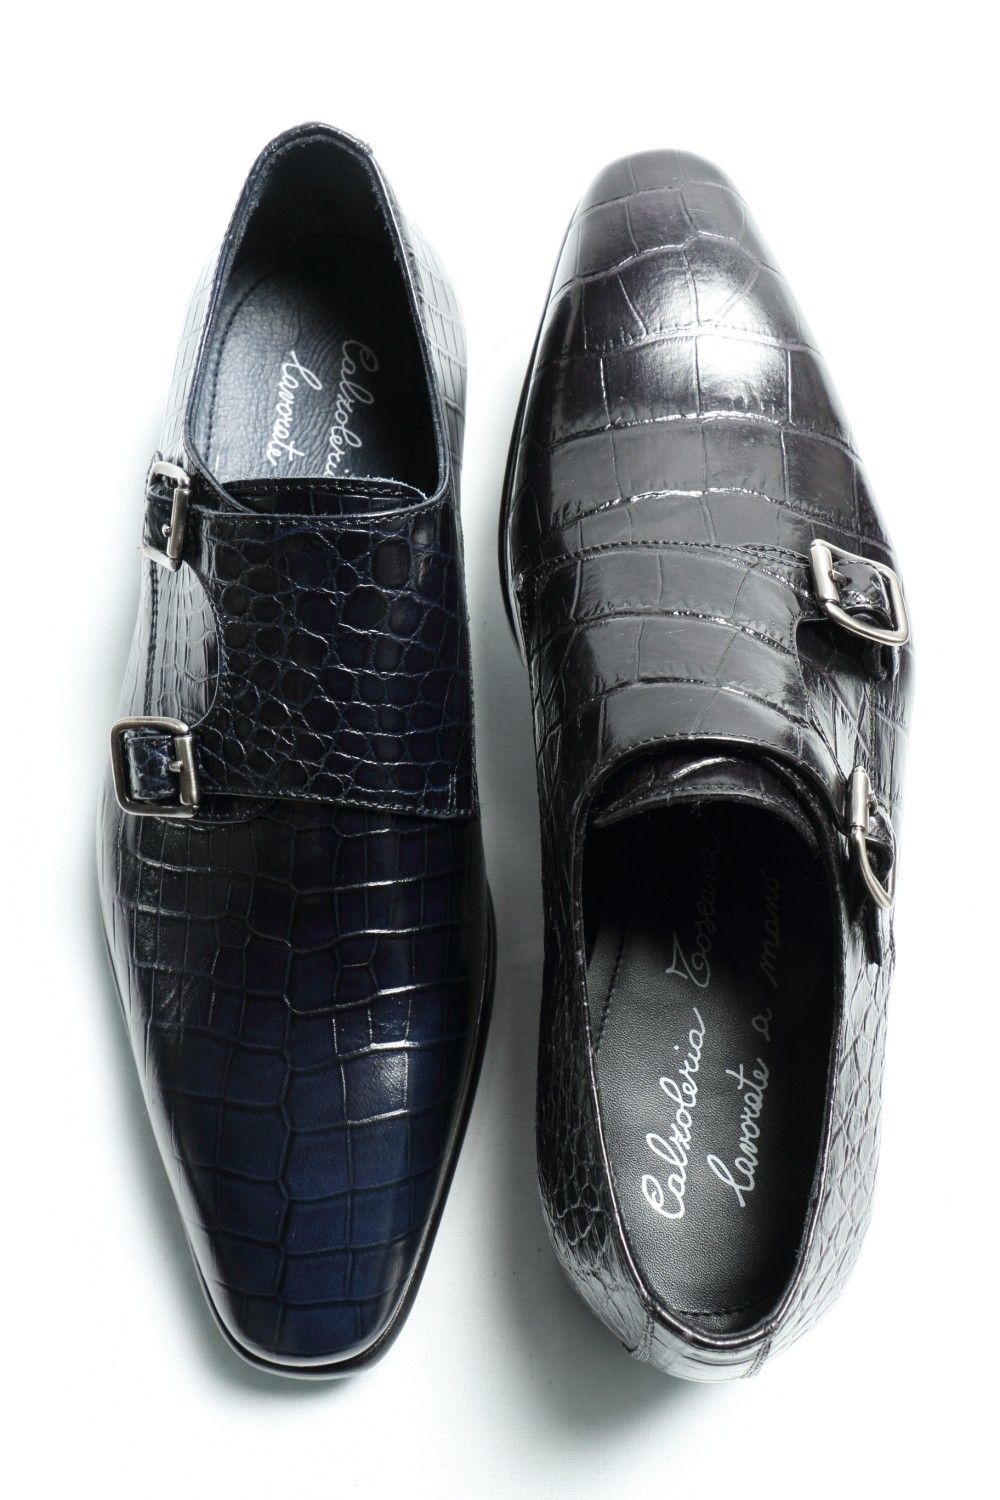 タヌキさんの革靴一覧はこちらCALZOLERIA TOSCANA ダブルモンク クロコ型押し 革靴 42